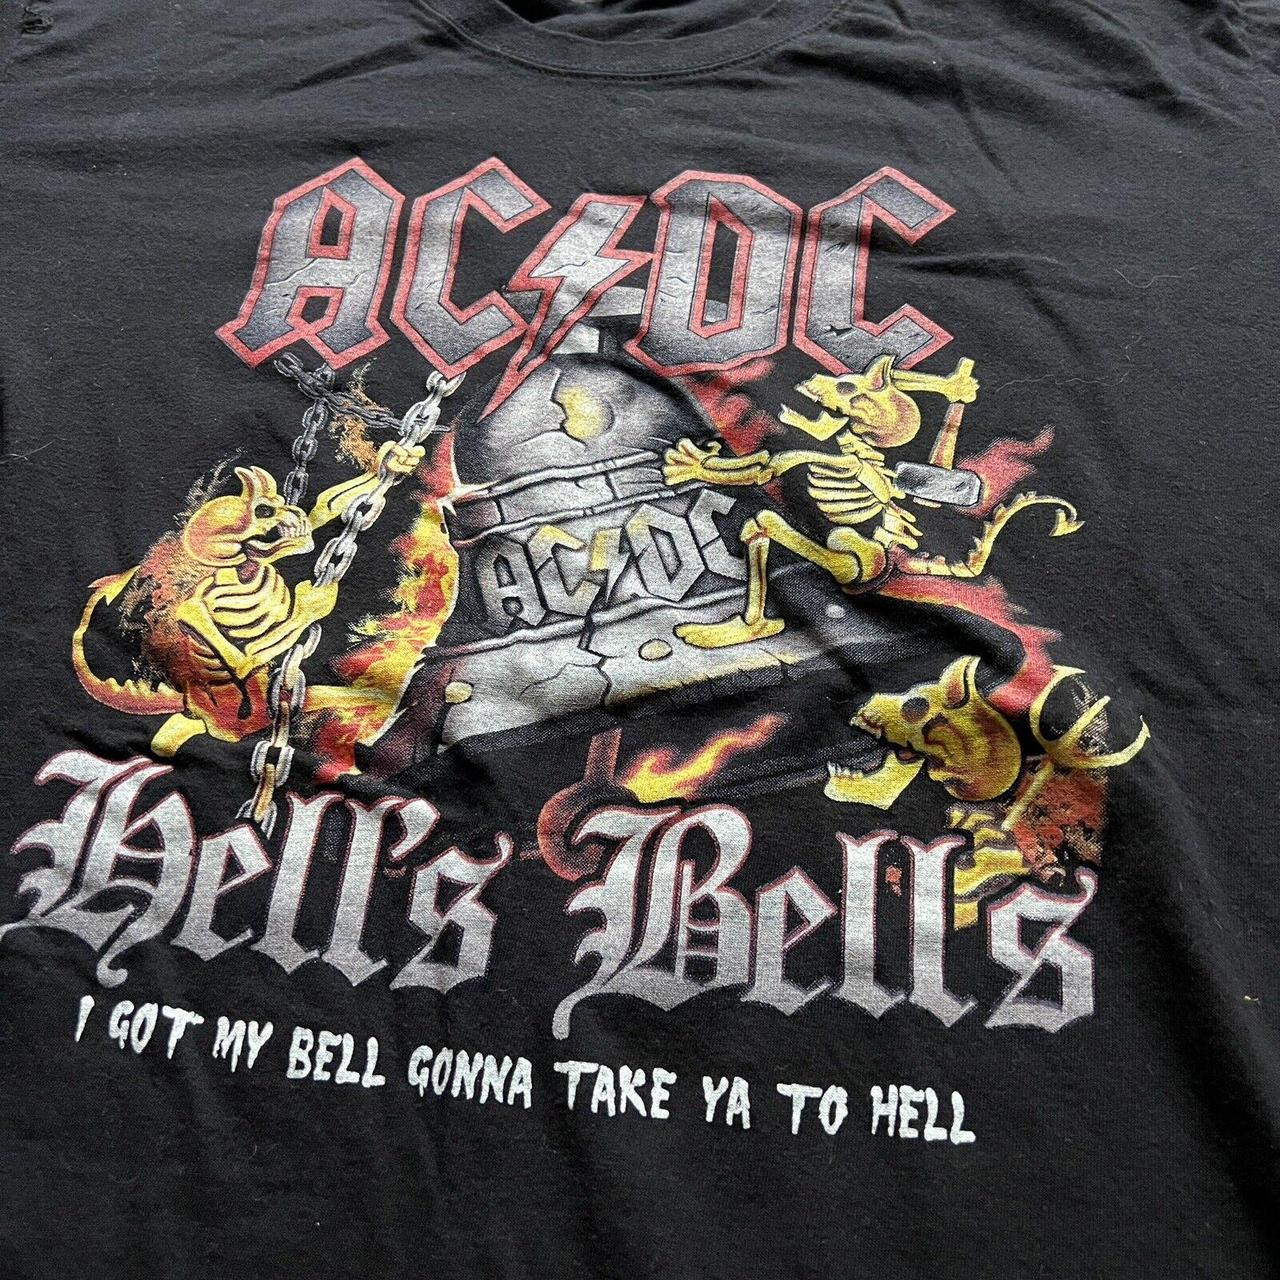 Bell Men's T-shirt (2)